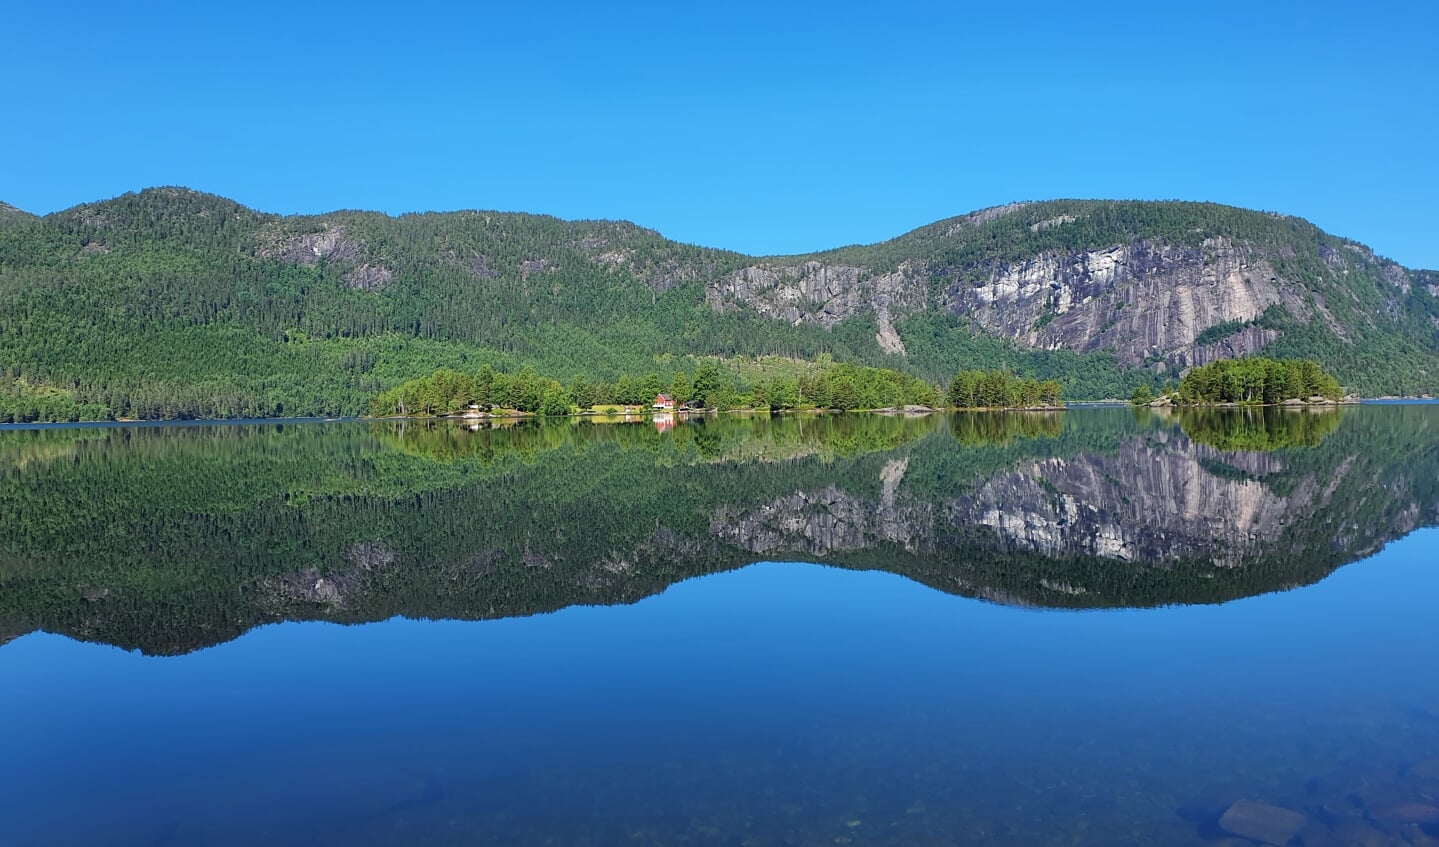 Deze foto is gemaakt tijdens onze rondreis in Noorwegen. Hij is gemaakt op 30 juni 2022 in Bygland, met een prachtige blauwe lucht en een spiegelvlak meer.